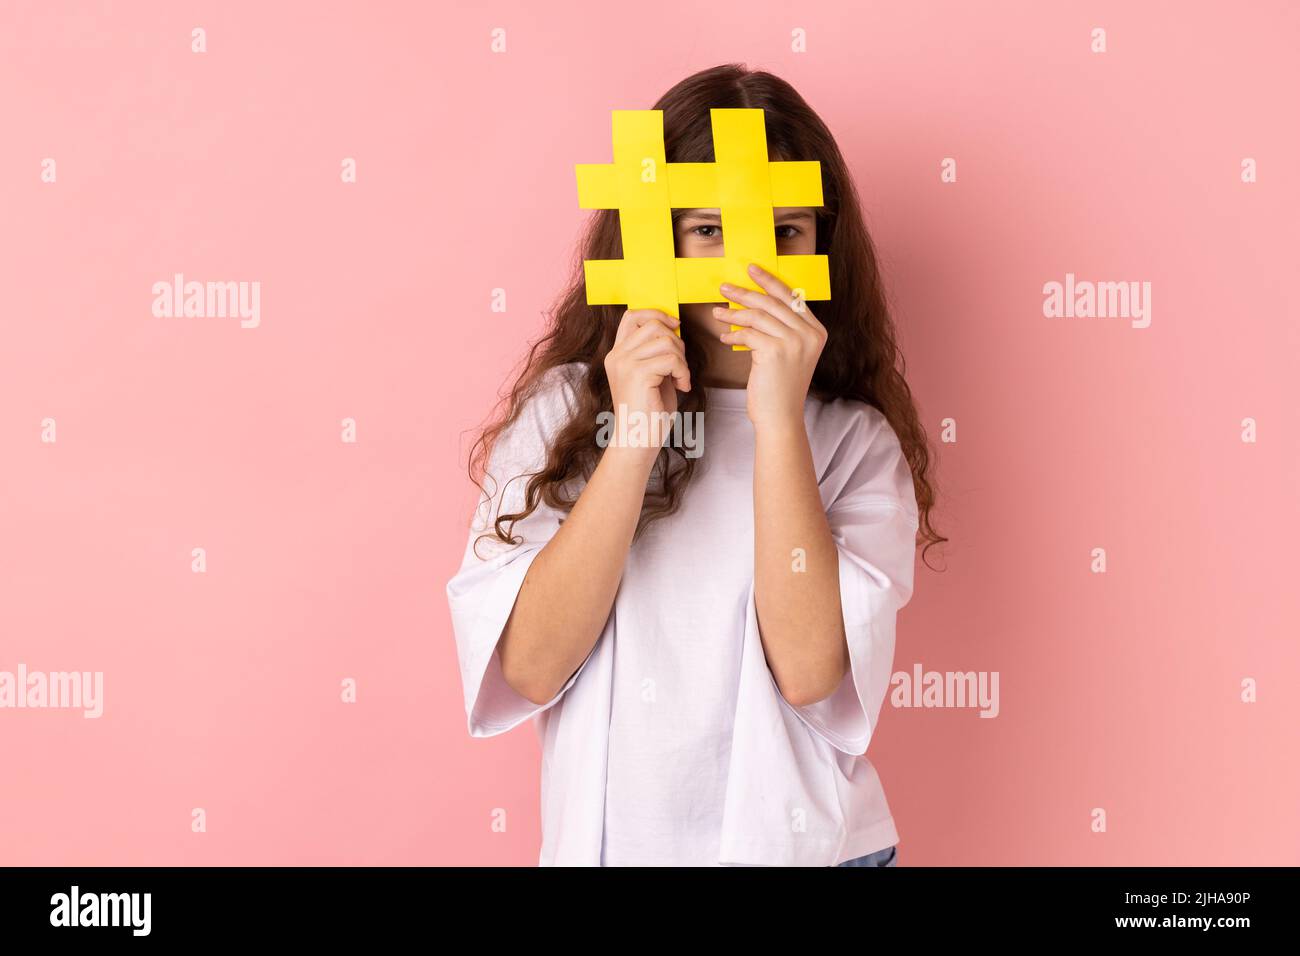 Kleines Mädchen trägt weißes T-Shirt bedeckt Gesicht mit Social-Media-Hashtag-Symbol, empfehlen, trendige Inhalte, beliebte Business-Blog folgen. Innenaufnahme des Studios isoliert auf rosa Hintergrund. Stockfoto